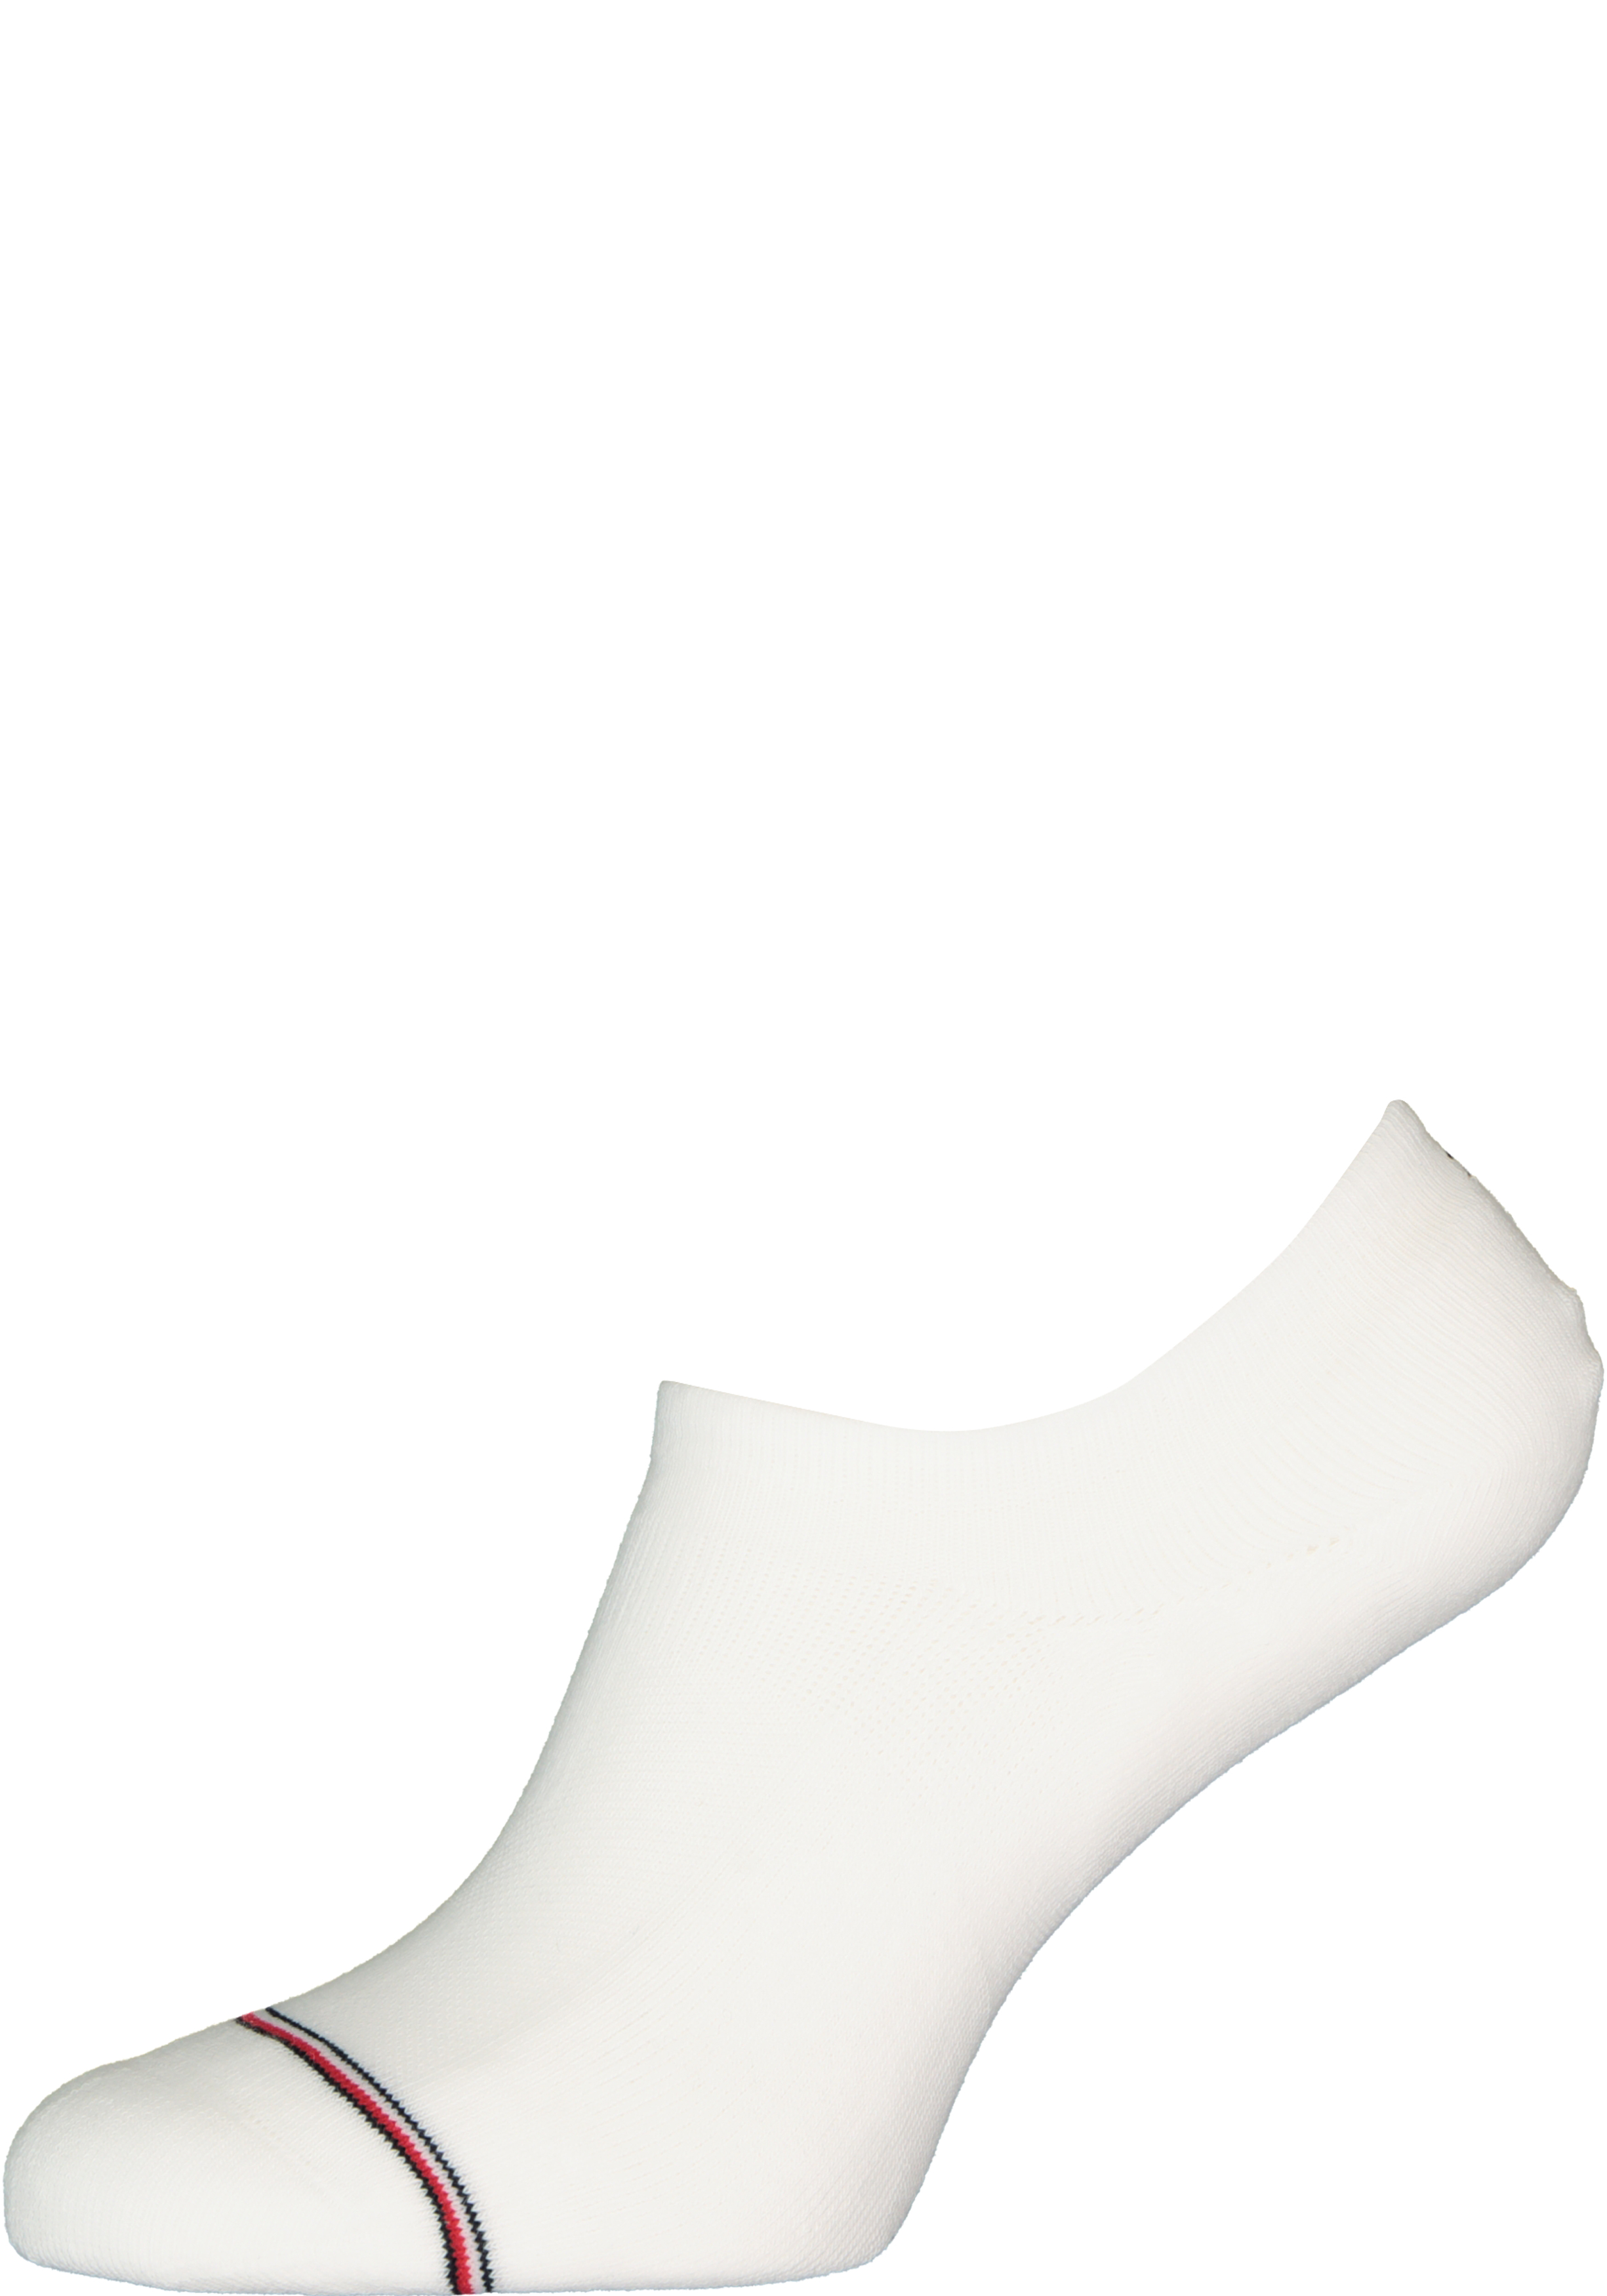 Tommy Hilfiger Iconic Sports Socks (2-pack), heren sneakersokken katoen, onzichtbaar, wit